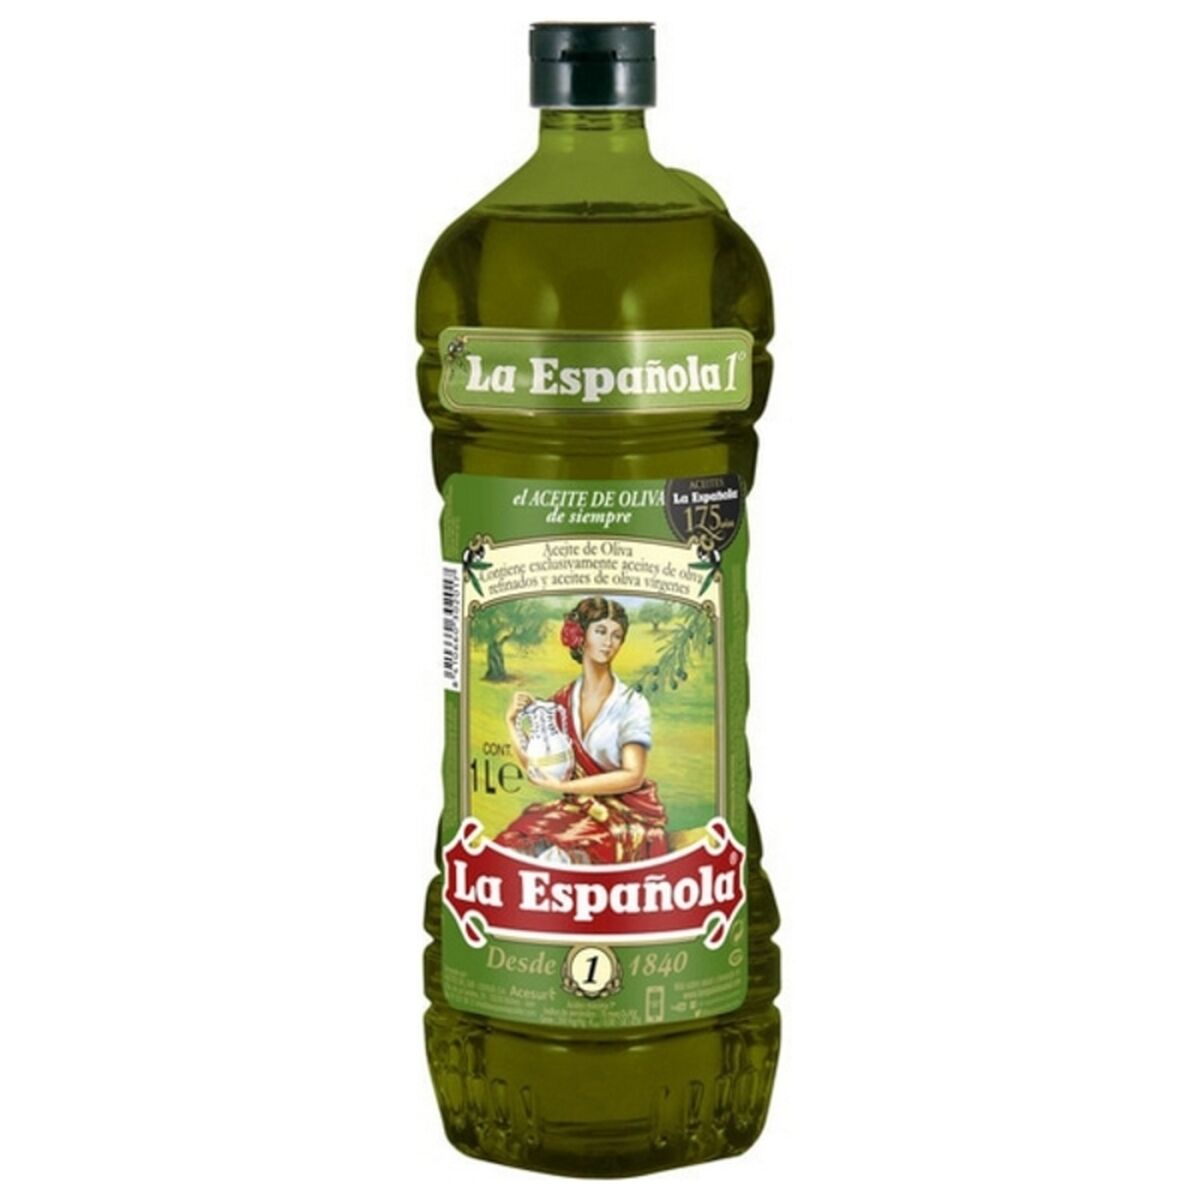 Масло оливковое espanola. Масло оливковое ла Эспаньола. La espanola масло оливковое 5 л. Carbonell масло оливковое. Abaco оливковое масло.